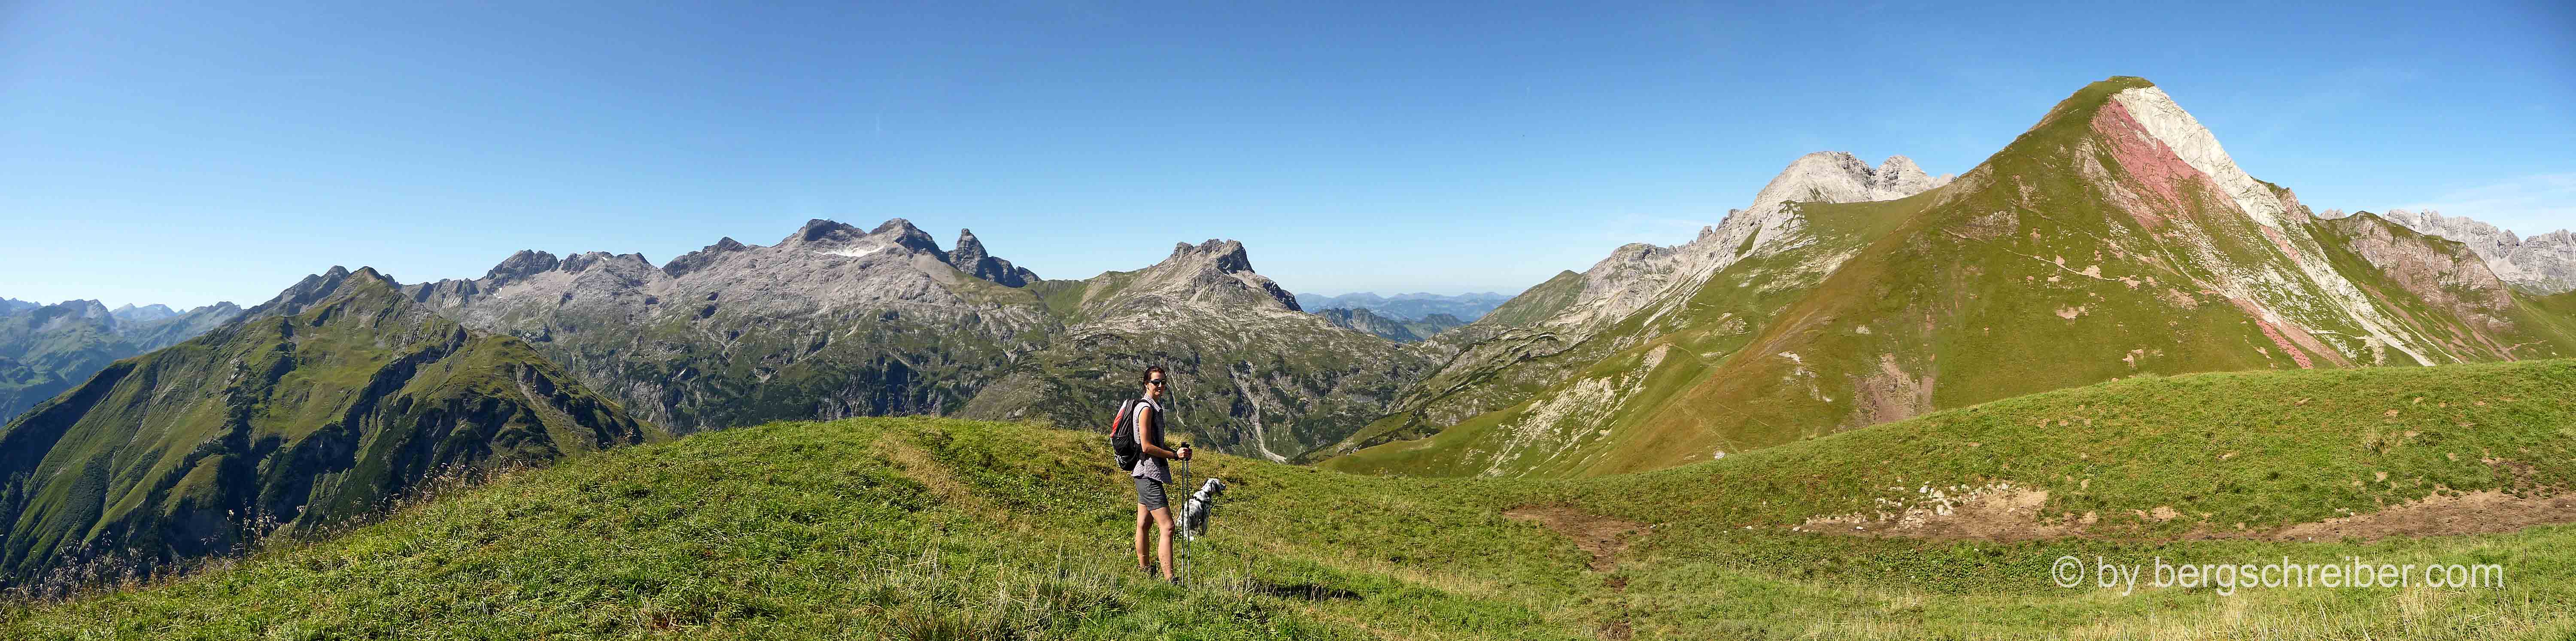 Allgäuer Alpen: Links der Allgäuer Hauptkamm, rechts die Rothornspitze